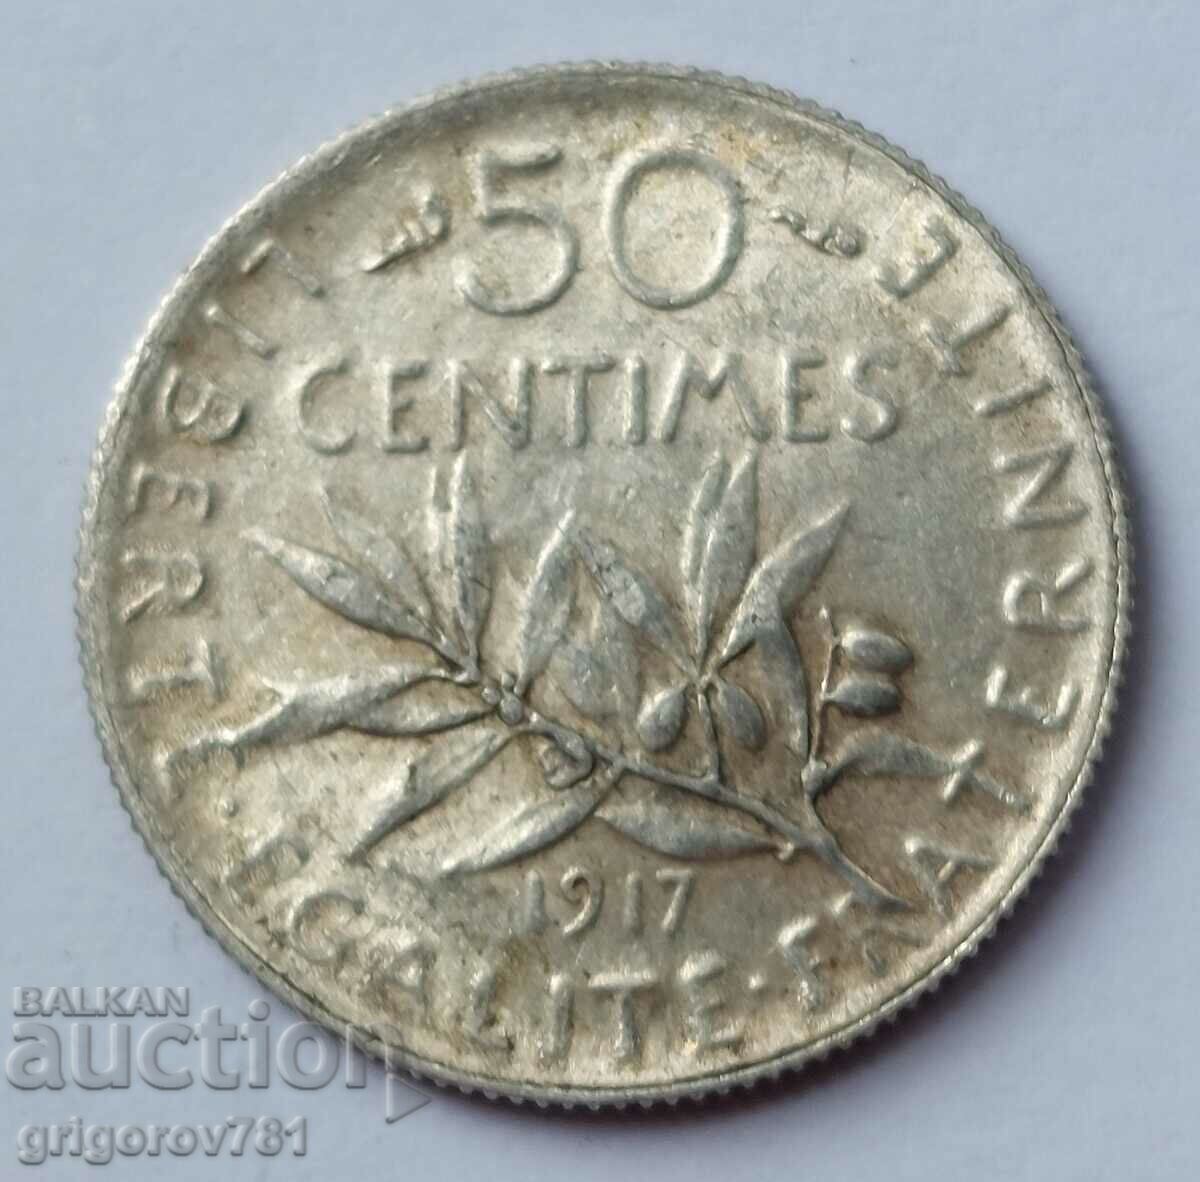 Ασημένιο 50 εκατοστά Γαλλία 1917 - ασημένιο νόμισμα №36